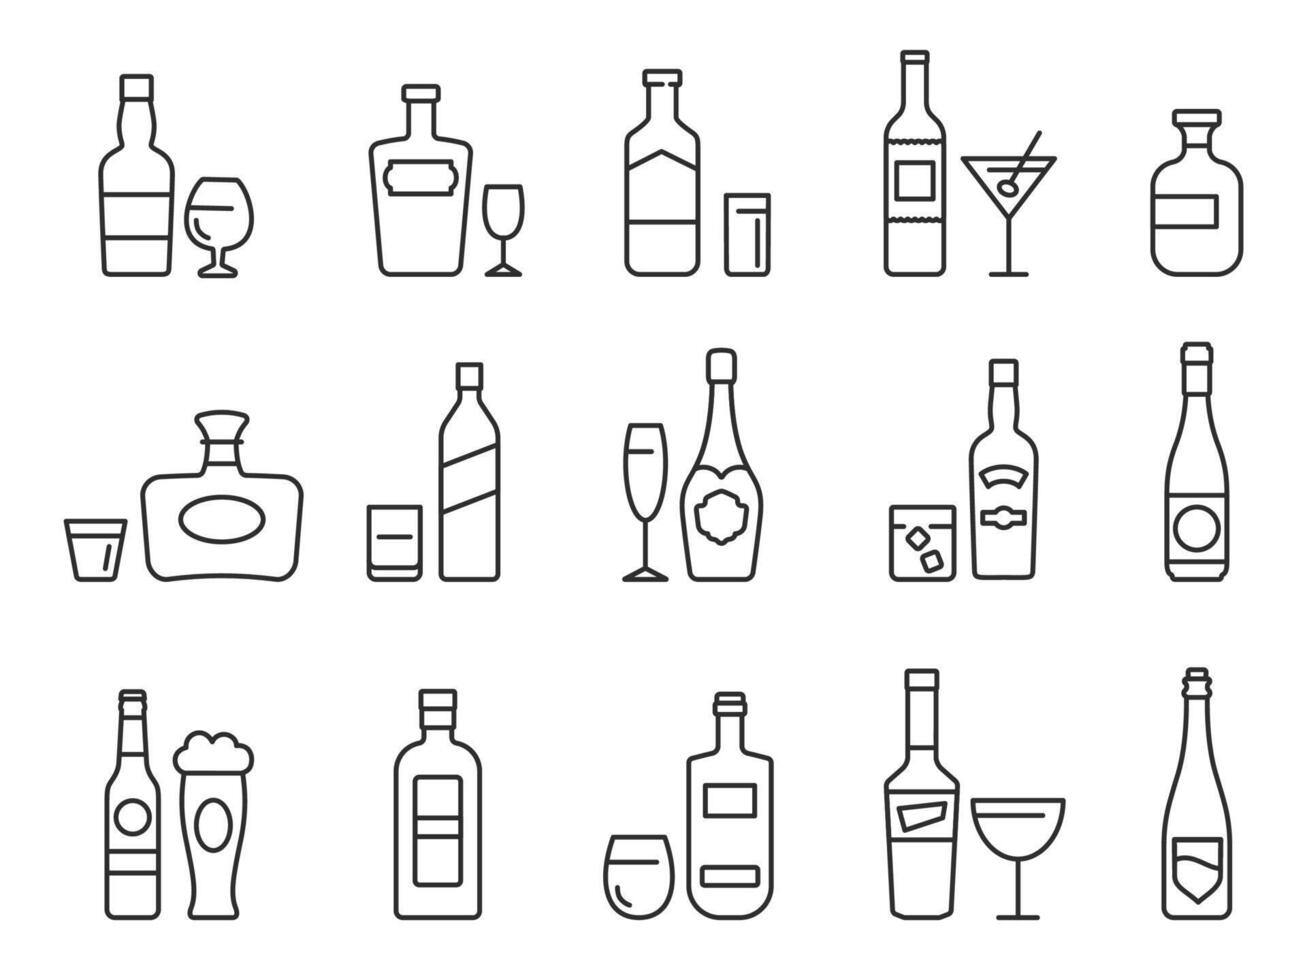 alcohol bebidas línea iconos contorno botellas y lentes con cerveza, vino y bar cocteles pub menú símbolos para alcohólico bebida vector conjunto